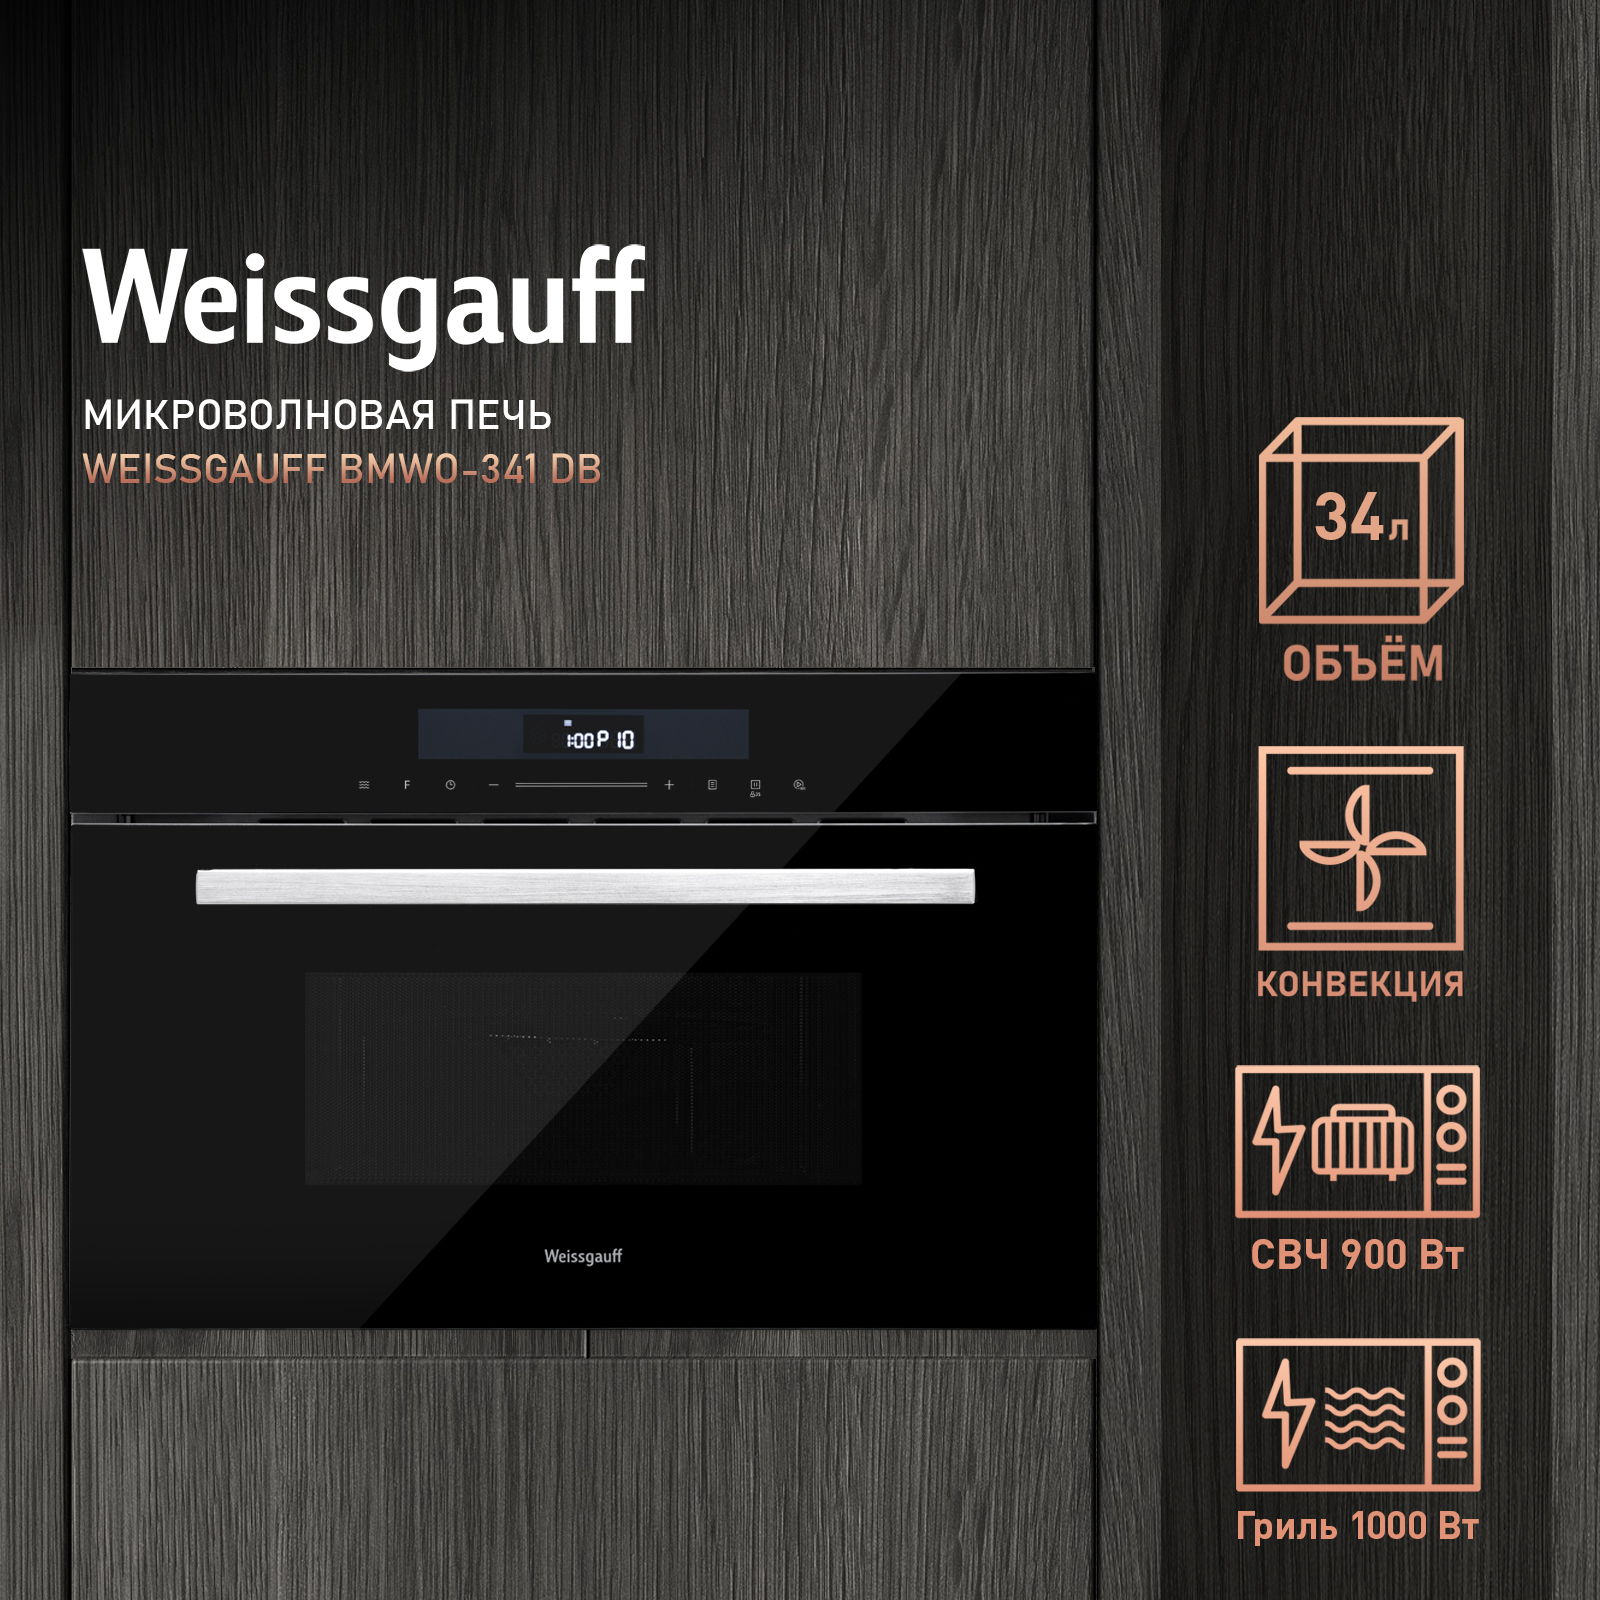 Встраиваемая микроволновая печь Weissgauff BMWO-341 DB Black Edition черная встраиваемая микроволновая печь weissgauff hmt 2016 grill черная